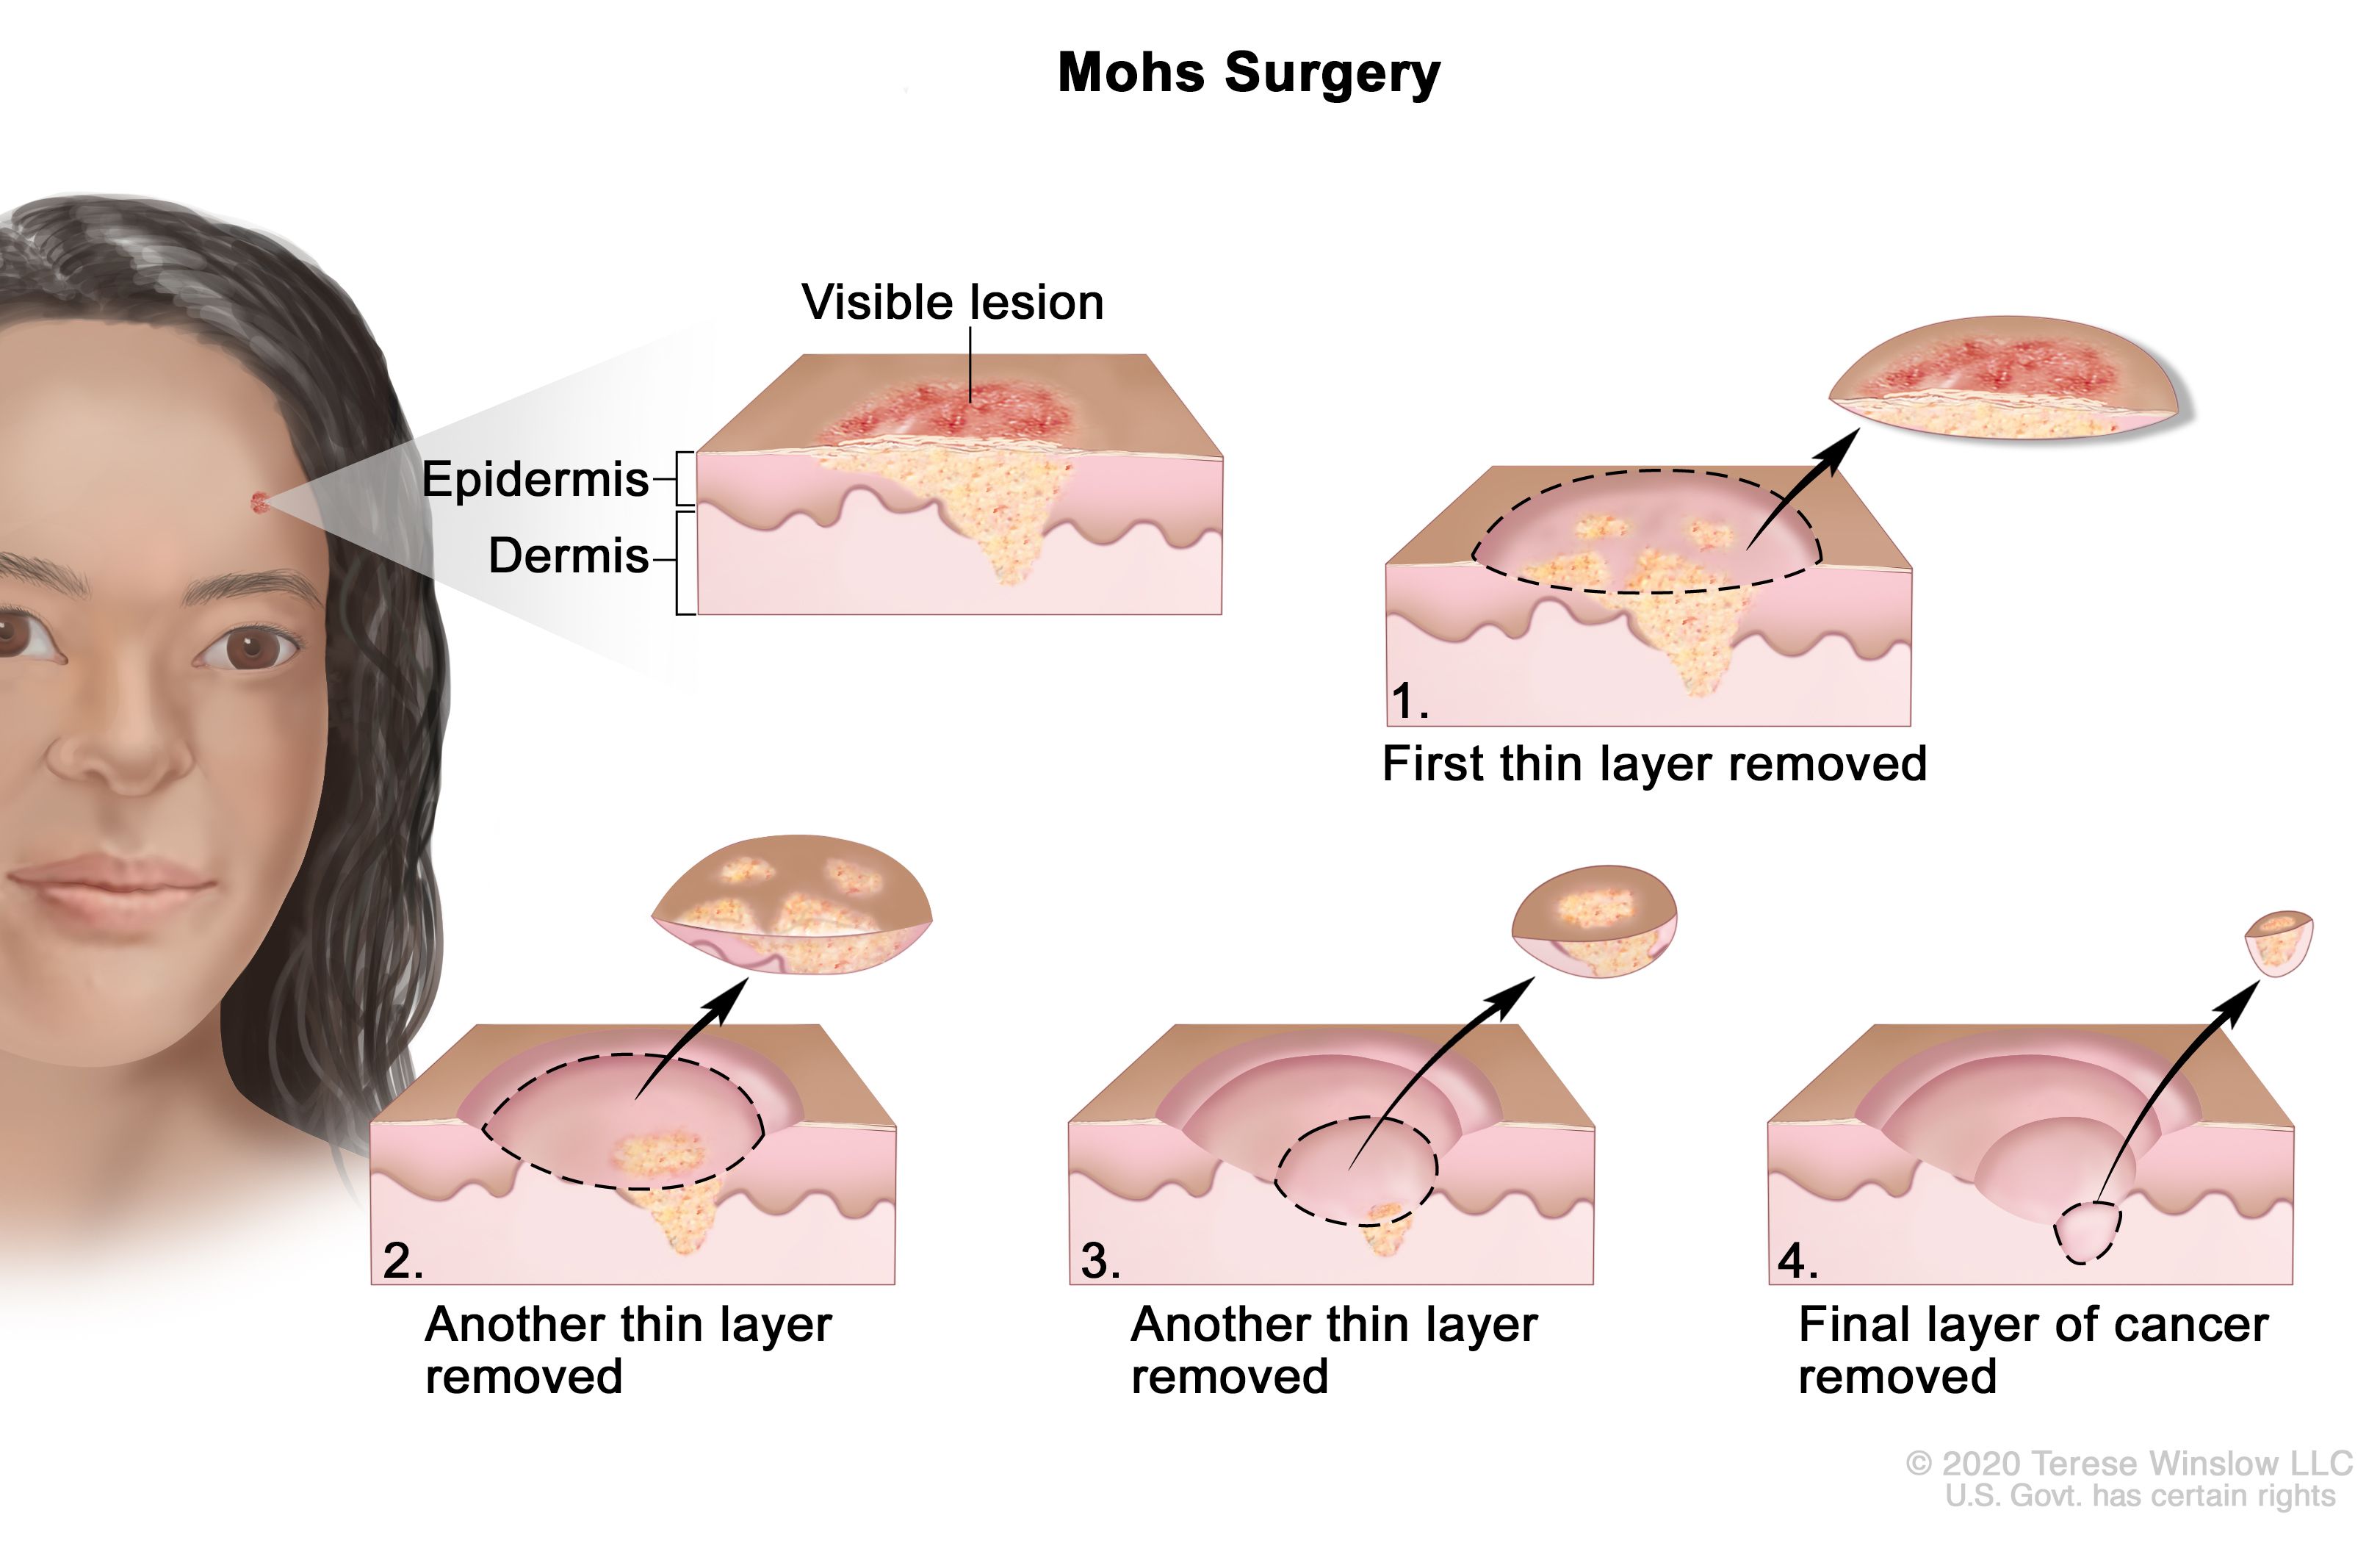 モース術：図は、顔面に皮膚がんが発生している患者さんを示す。拡大図は、表皮（皮膚の外層）と真皮（皮膚の内層）にがんが見られる皮膚の一領域を示す。皮膚の表面には、目に見える病変が示されている。番号が振られた4枚の図は、がんを全て除去するまで、皮膚の薄層を1層ずつ除去していく様子を示している。